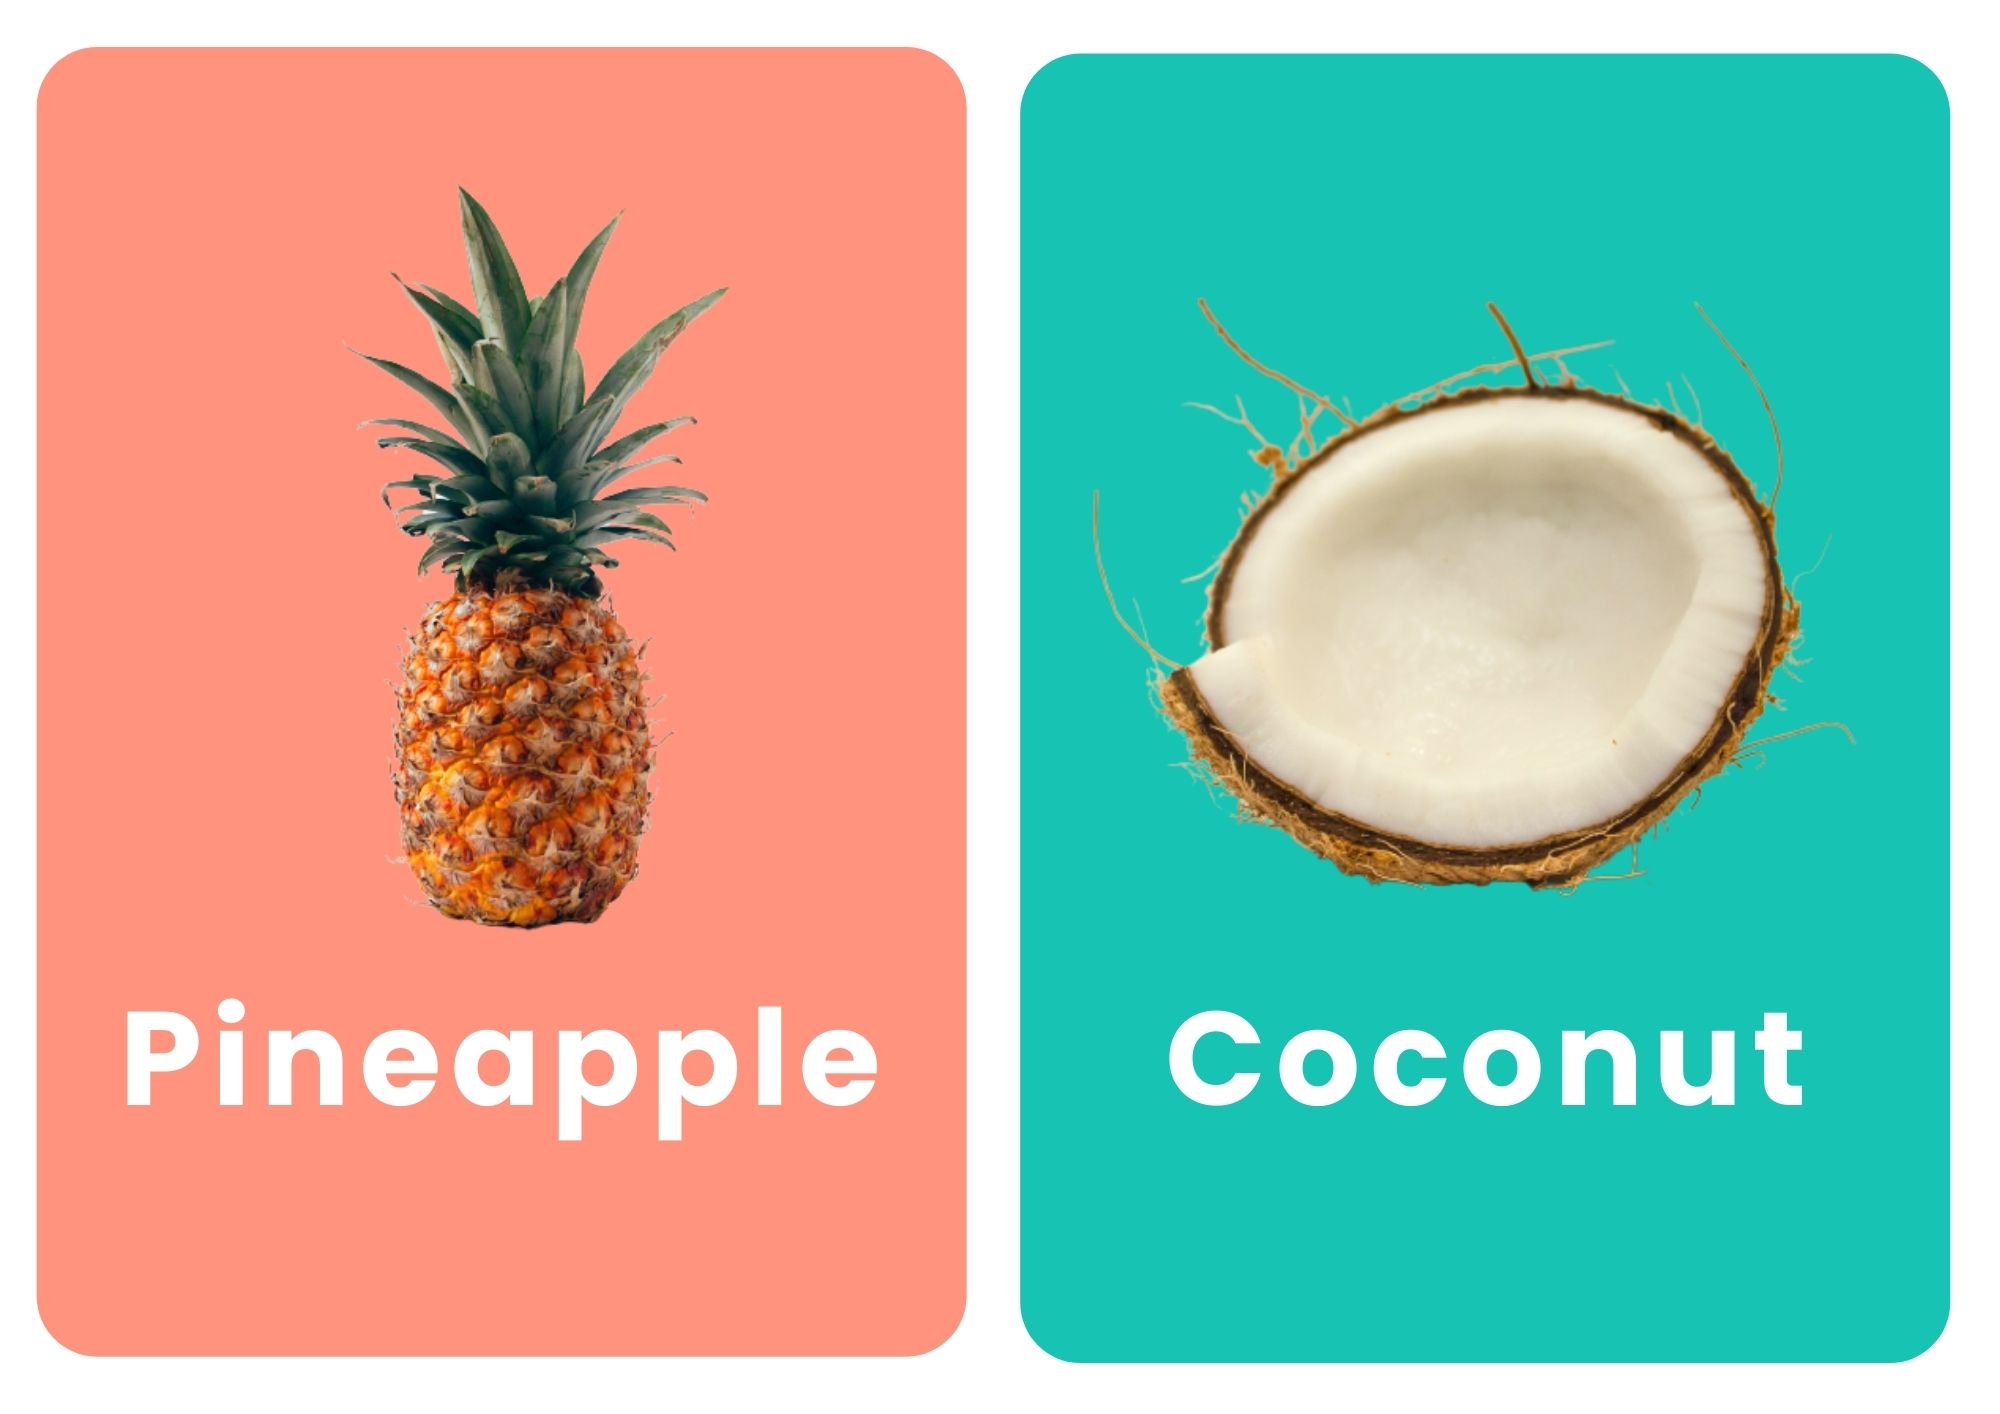 карточки фруктов на английском ананас кокос